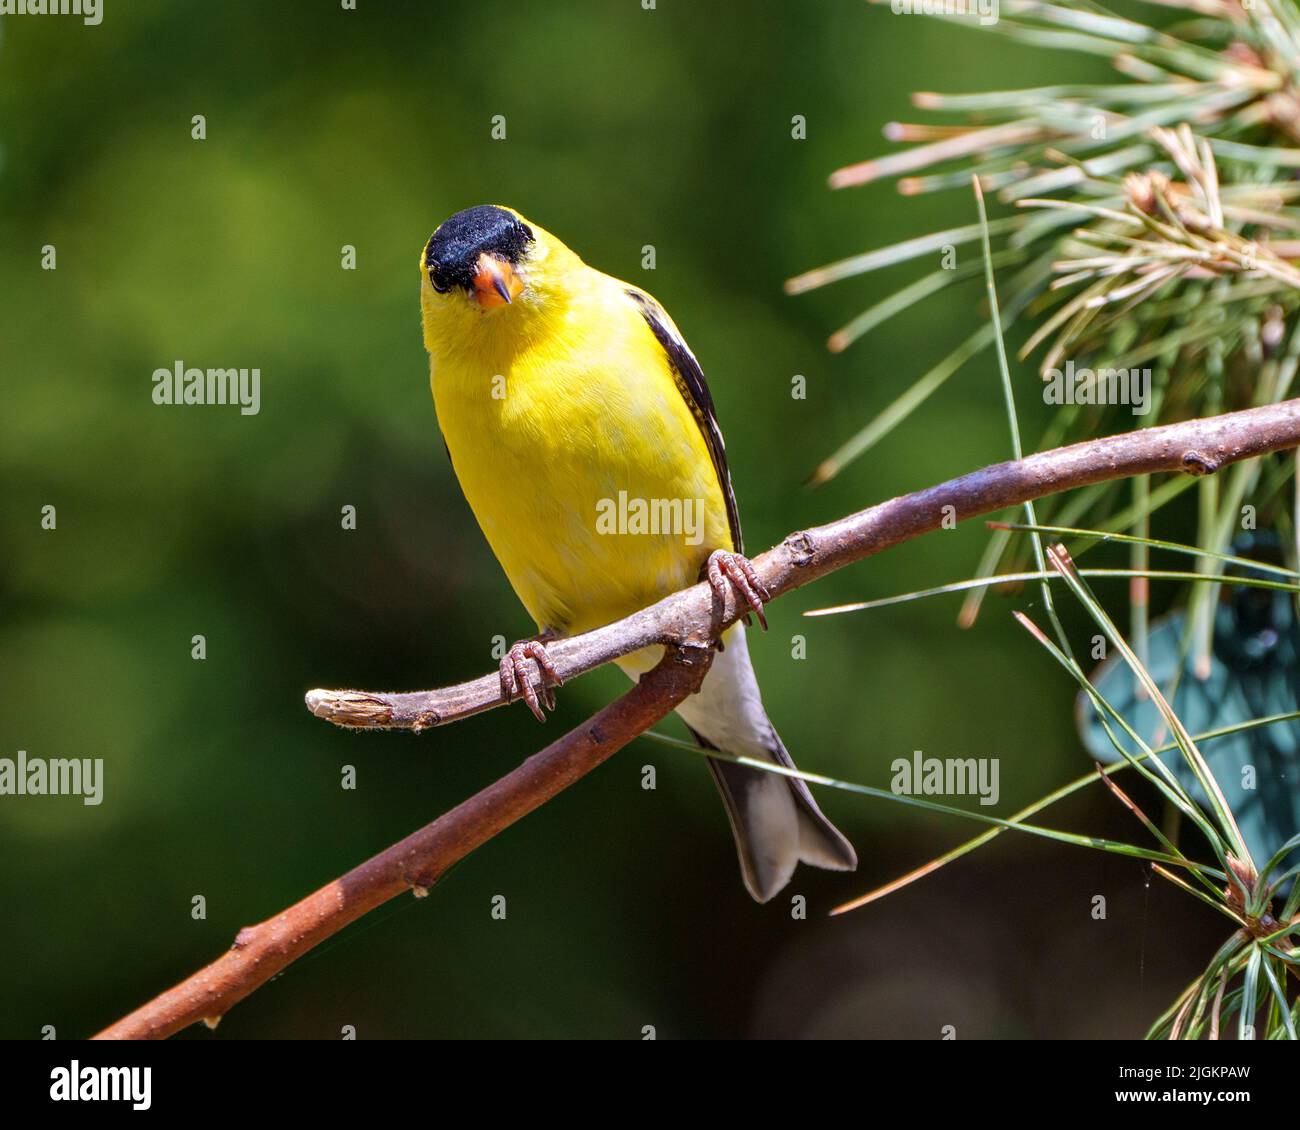 American Goldfinch – Nahaufnahme, die auf einem Zweig mit einem weichen, unscharfen grünen Hintergrund in seiner Umgebung und seinem Lebensraum thront und gelbe Farbe zeigt. Stockfoto